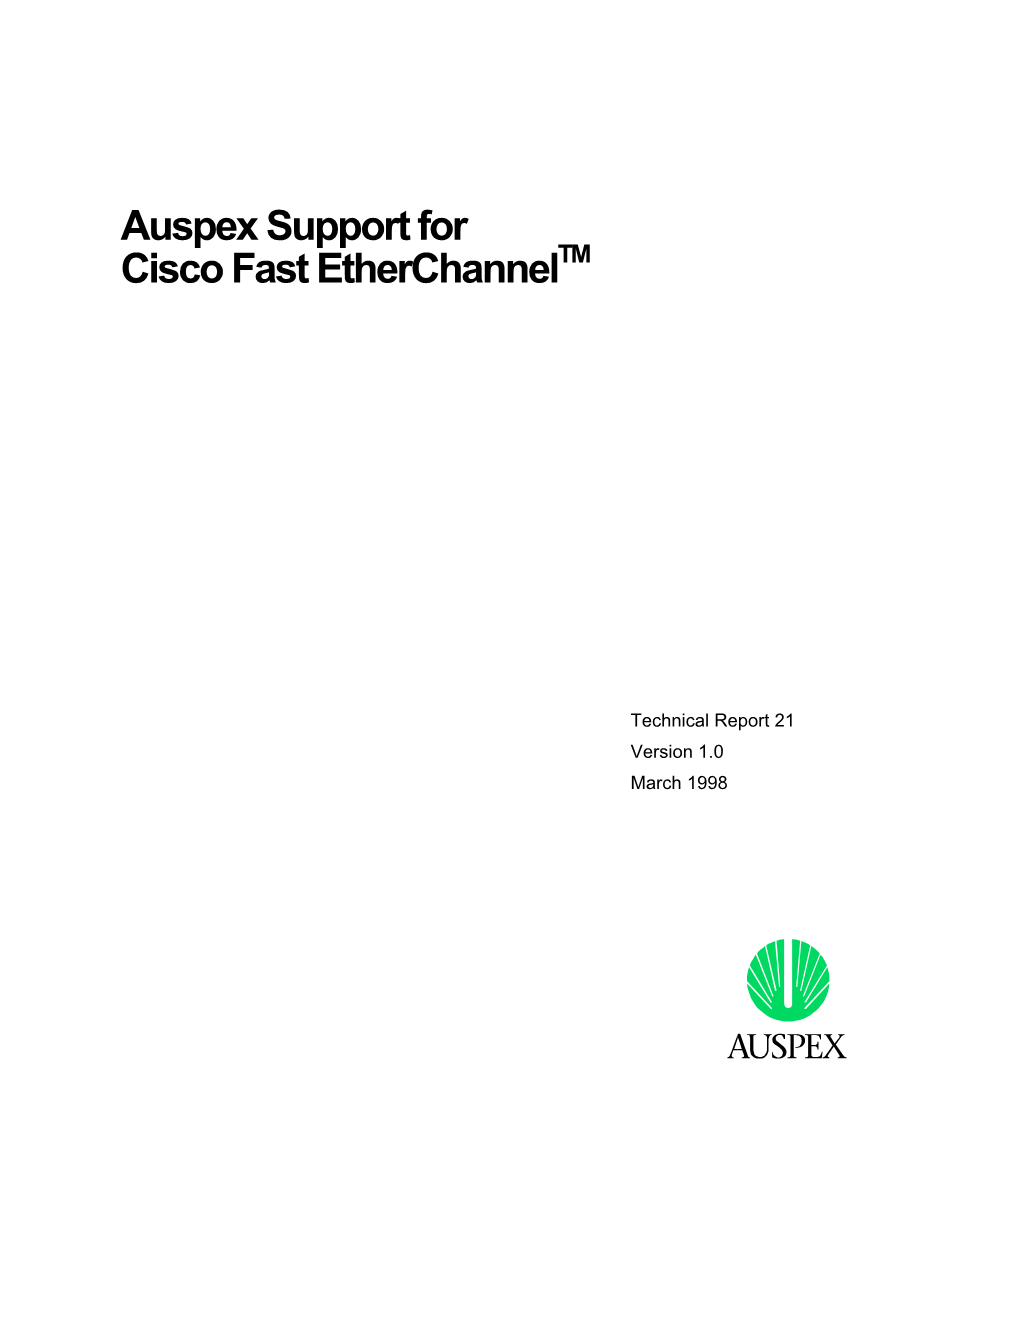 Auspex Support for Cisco Fast Etherchanneltm